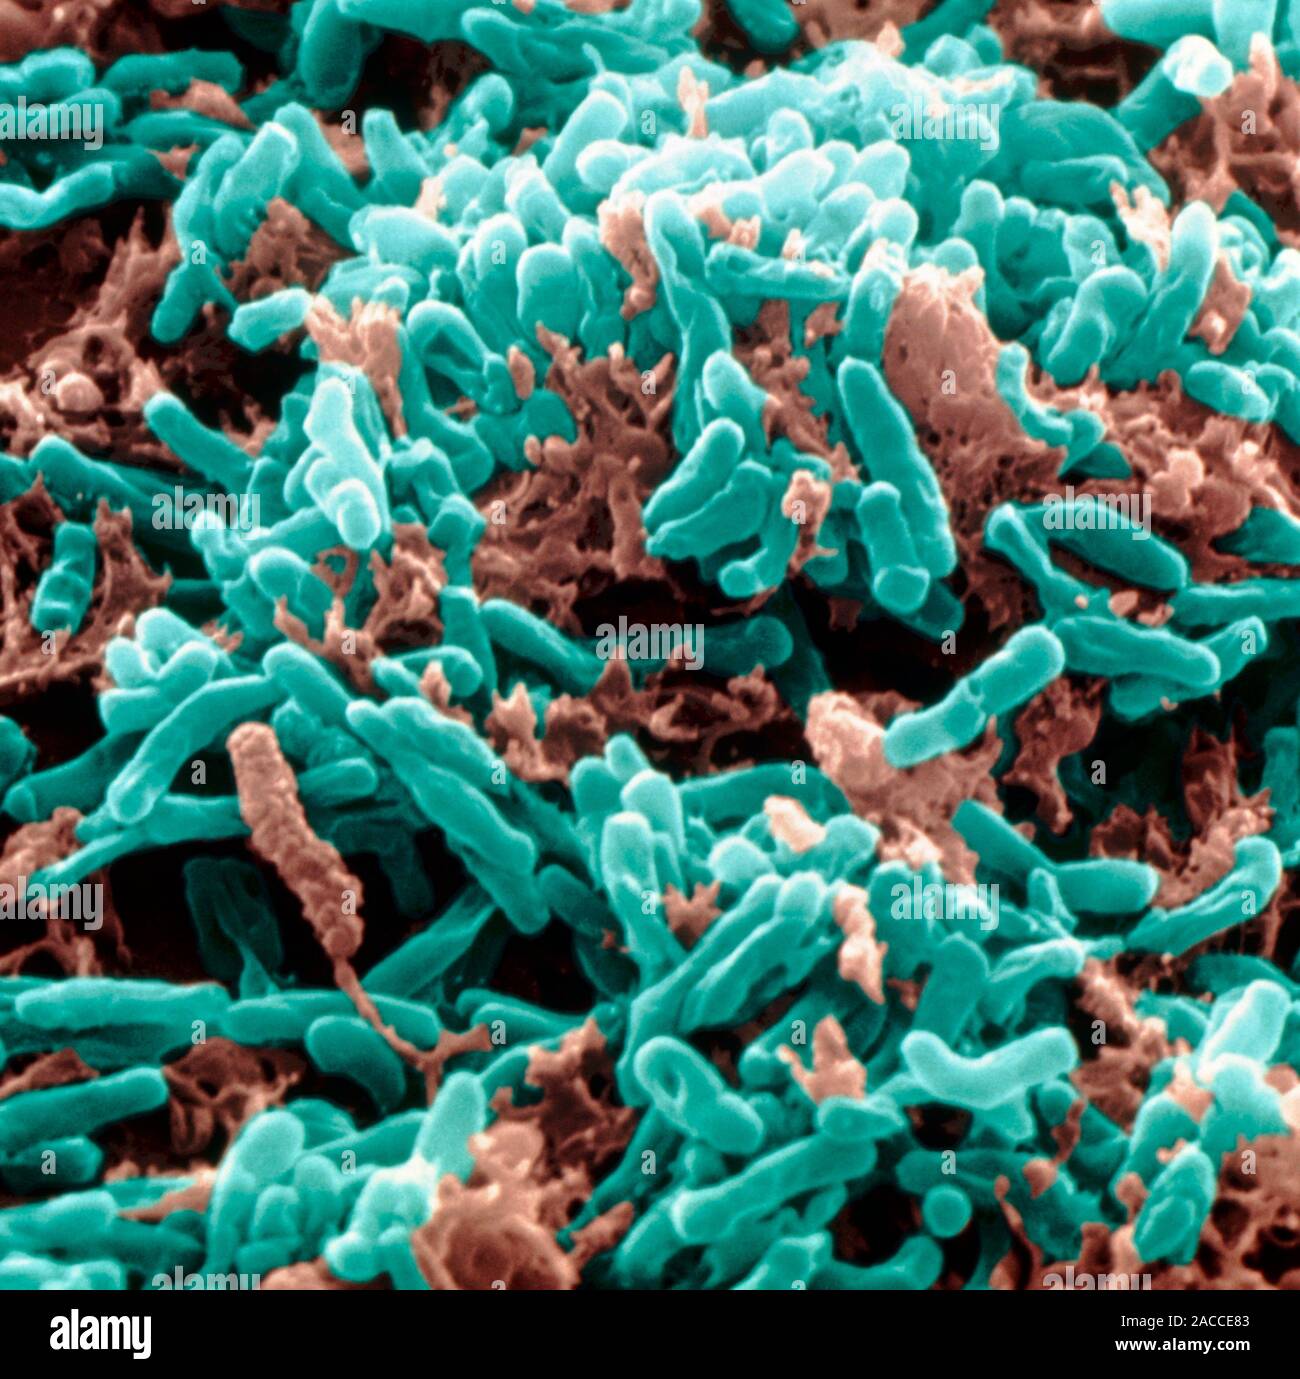 Новый вирус туберкулеза. Бактерия Mycobacterium tuberculosis. Палочка Коха Mycobacterium tuberculosis. Туберкулез палочка Коха под микроскопом.